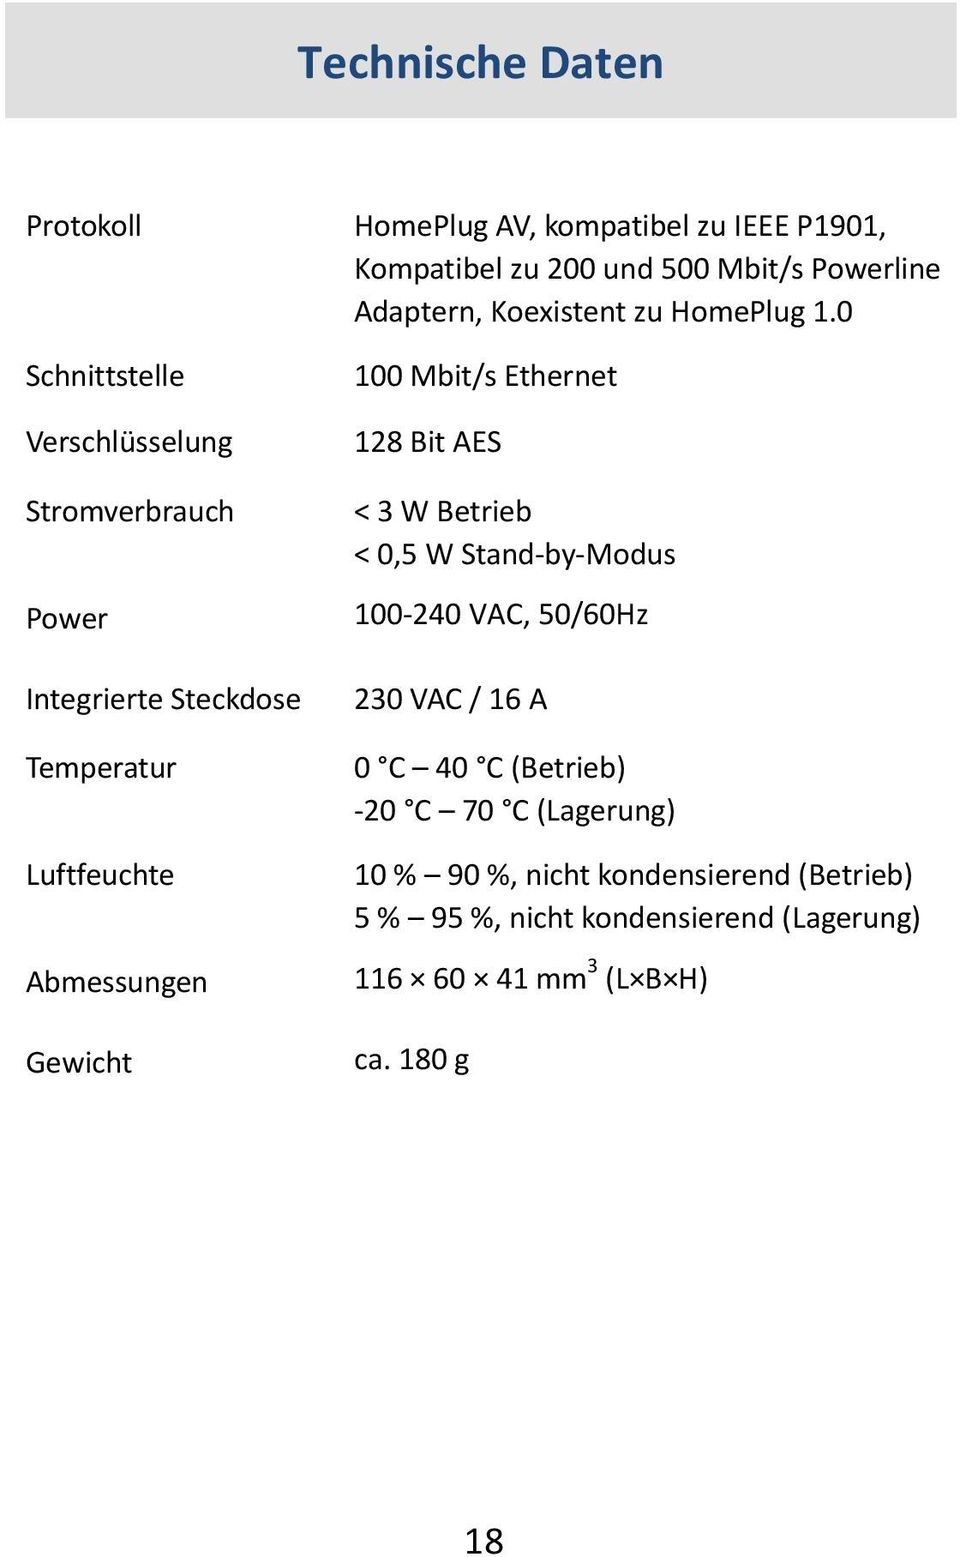 0 Schnittstelle Verschlüsselung Stromverbrauch Power Integrierte Steckdose Temperatur Luftfeuchte Abmessungen Gewicht 100 Mbit/s